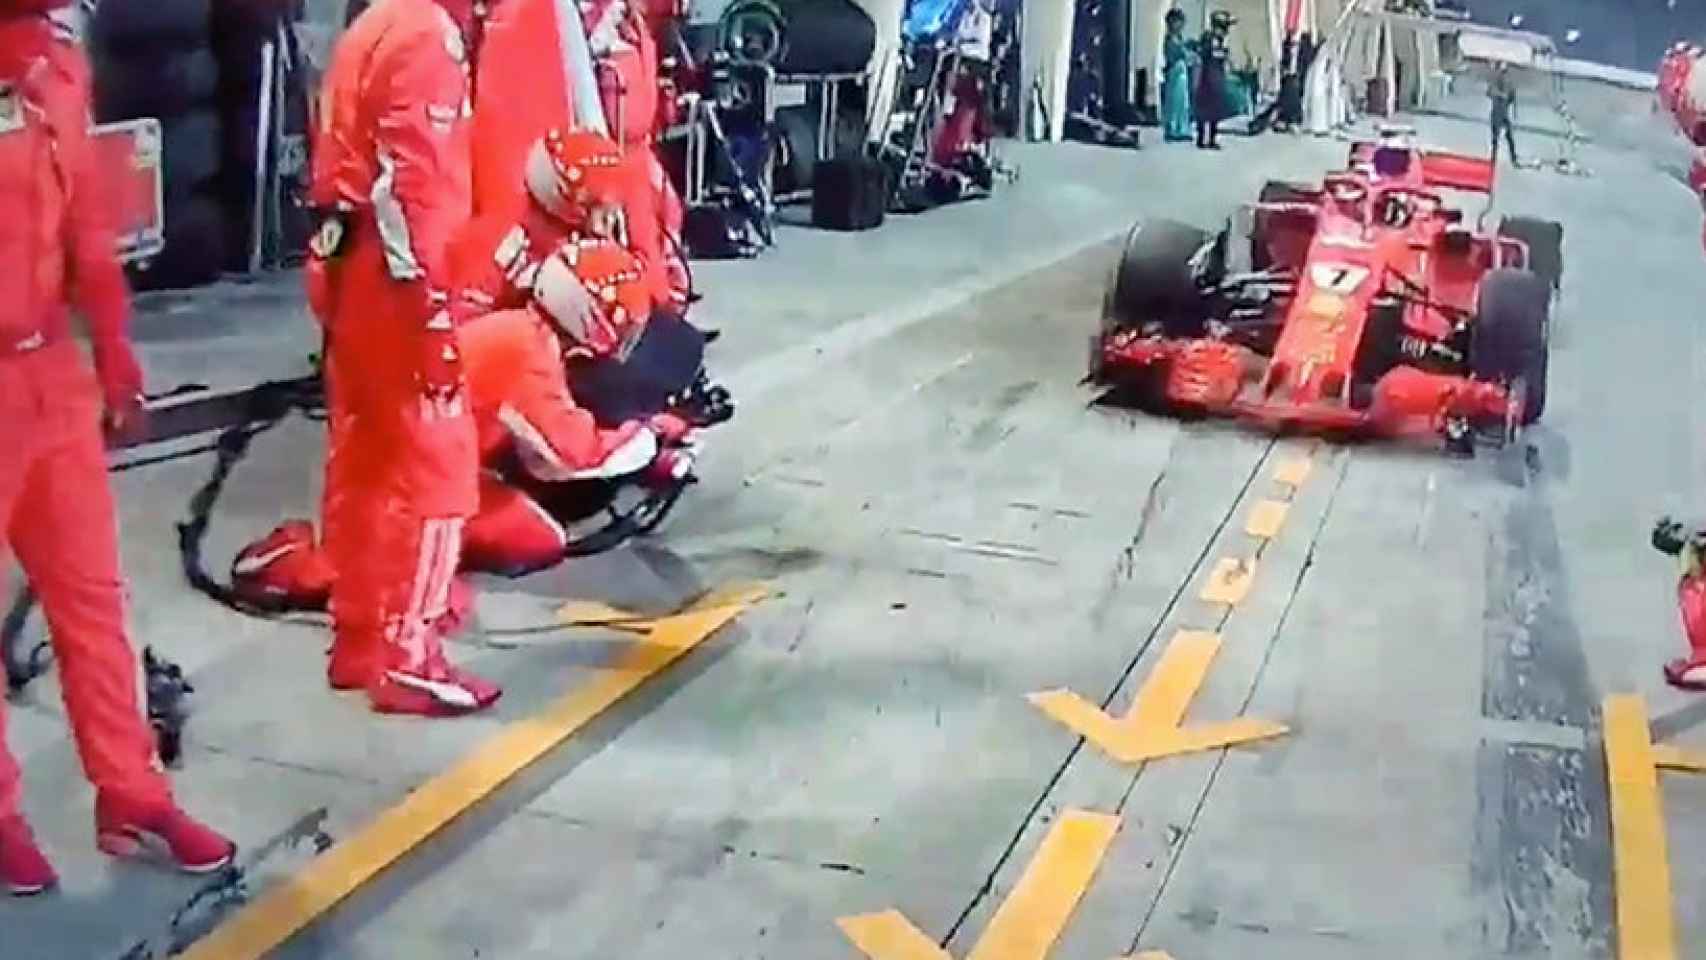 Kimi Raikkonen atropella a un mecánico de Ferrari